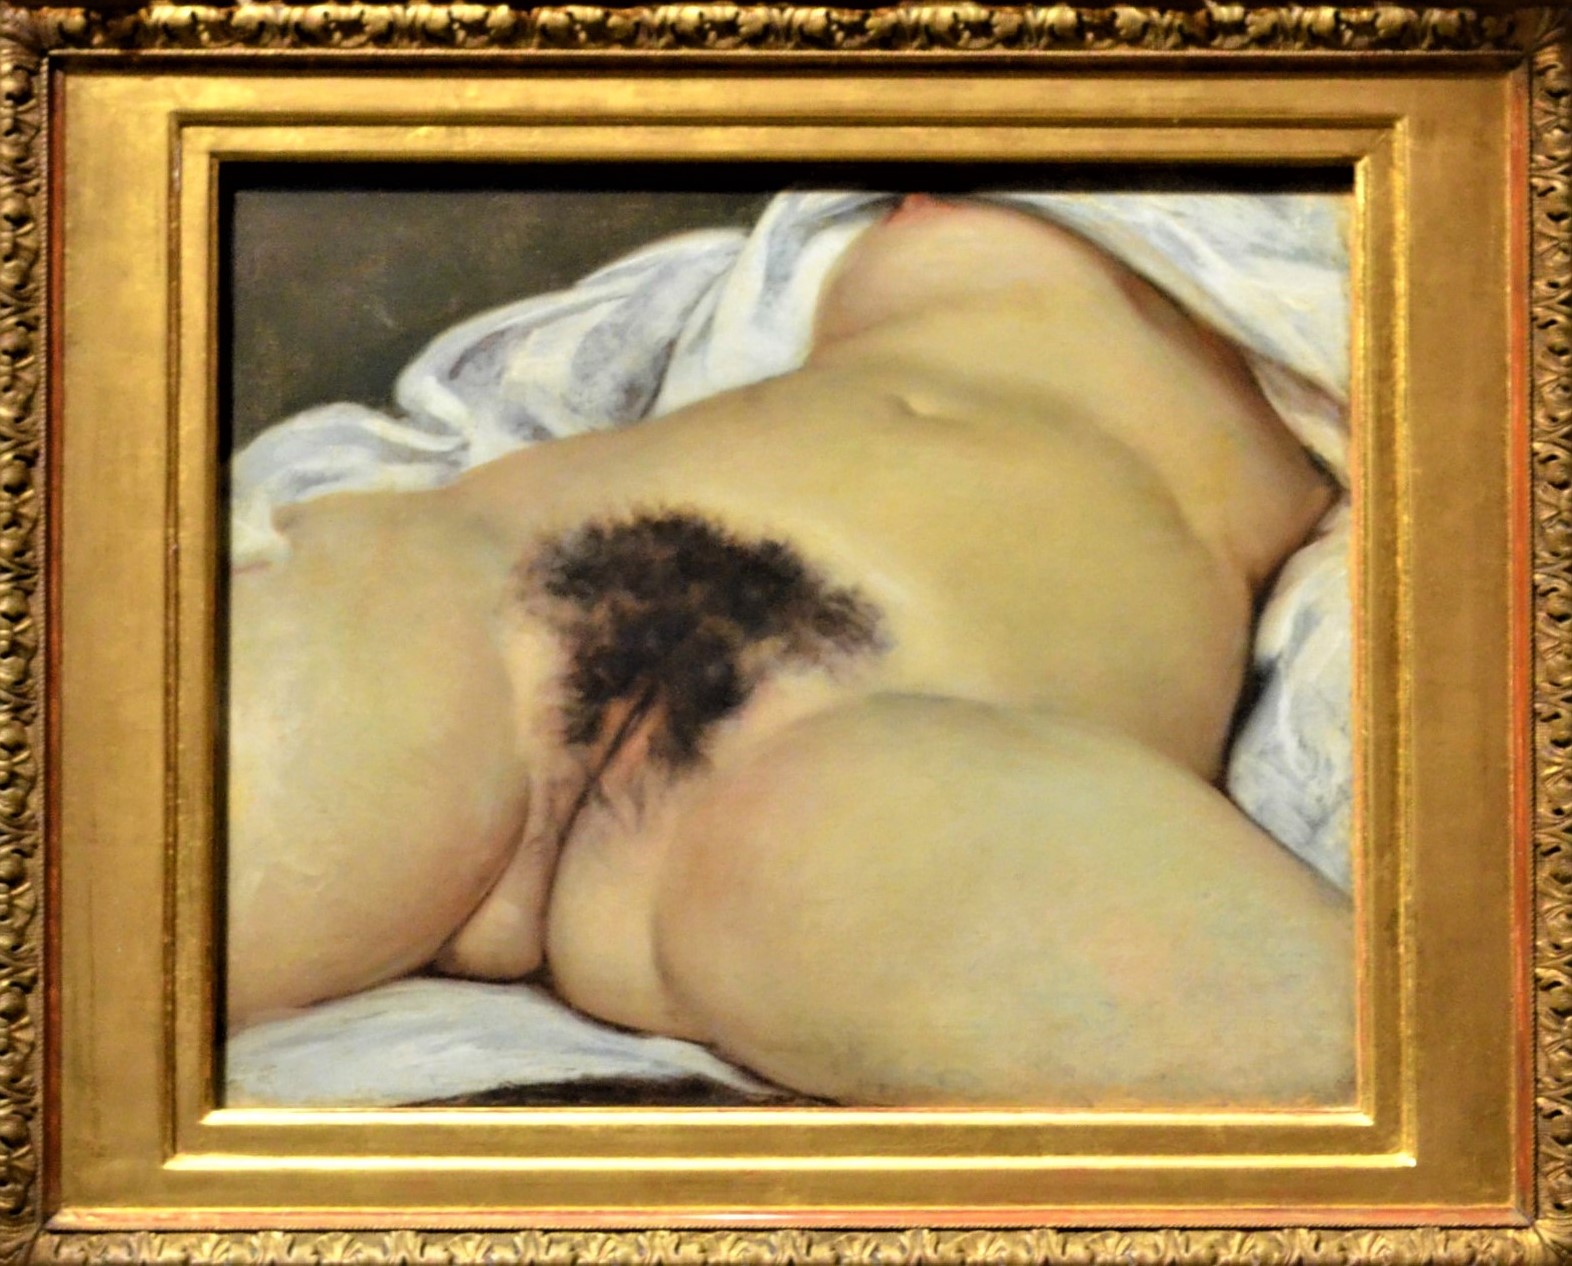 Lorigine du délire (sur LOrigine du monde de Courbet) image